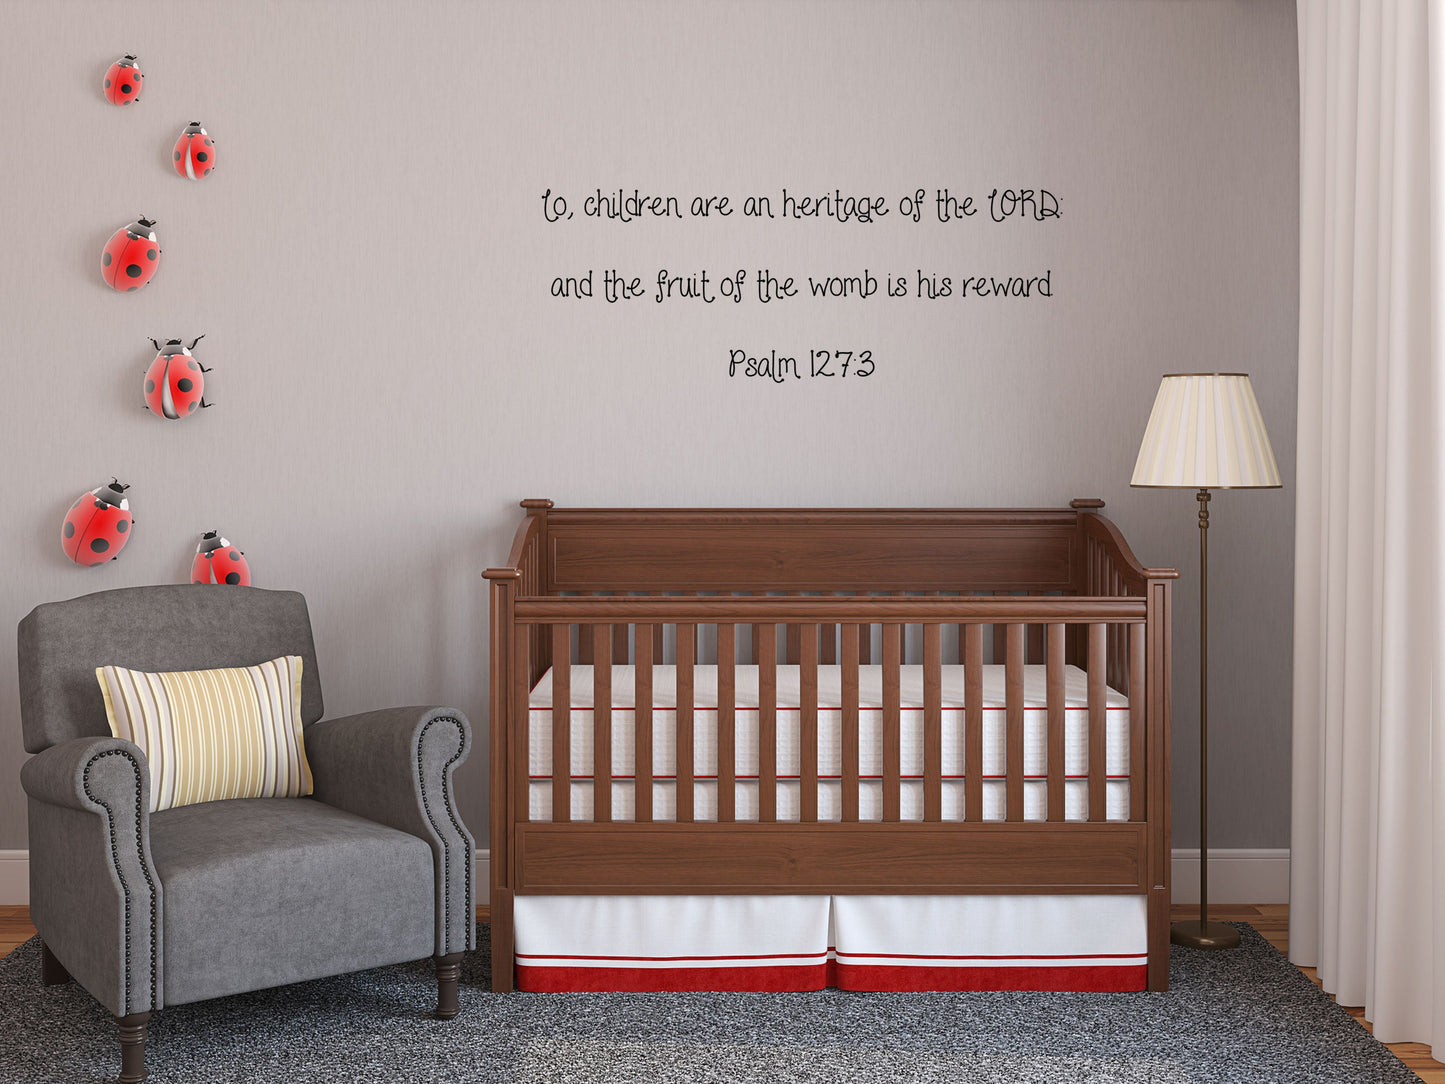 Psalm 127:3 - Christian Décor Bible Verse Sticker Vinyl Wall Decal Inspirational Wall Signs 